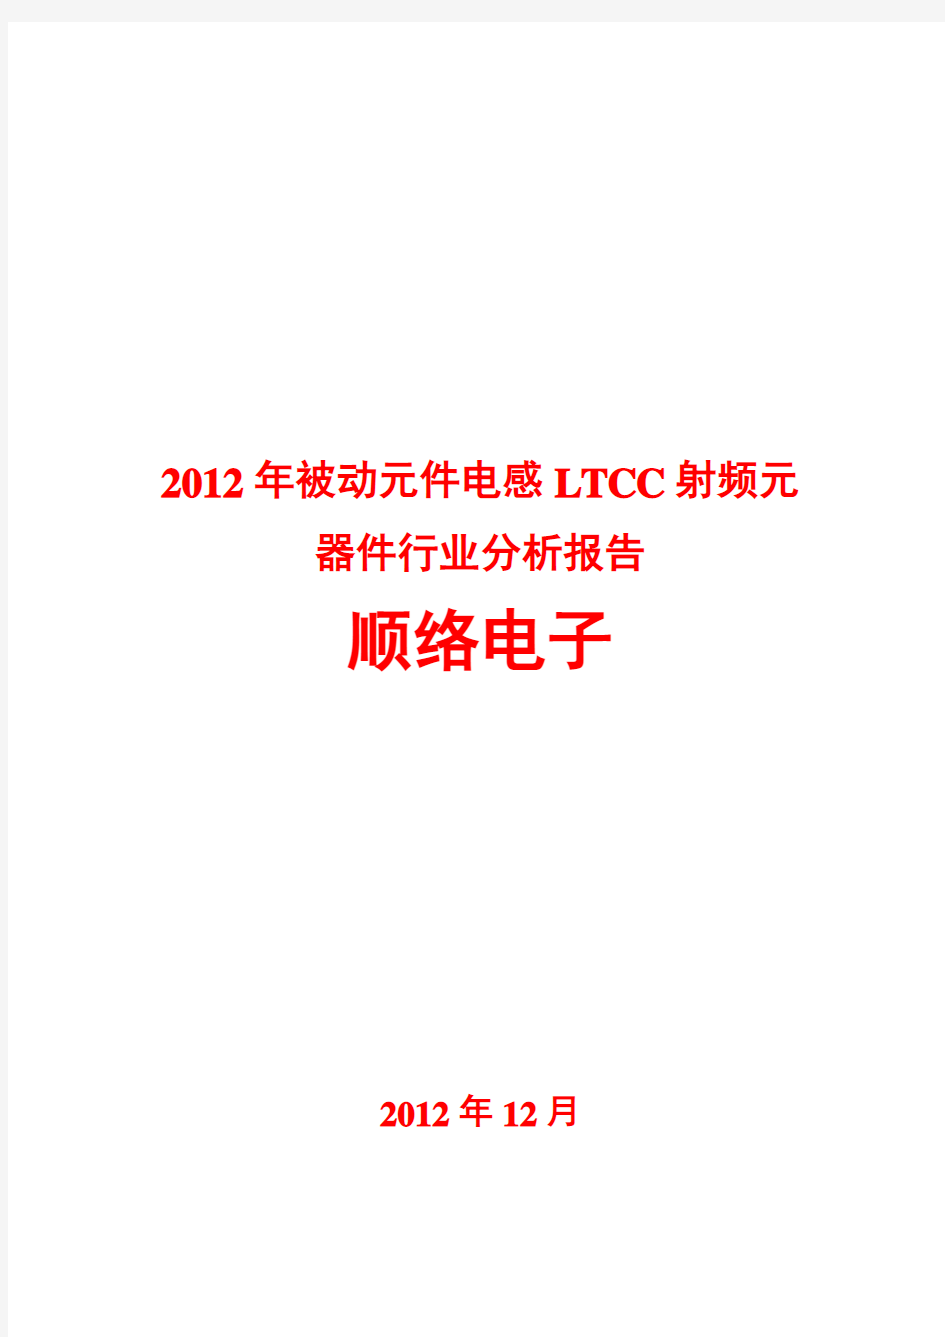 2012年被动元件电感LTCC射频元器件行业分析报告